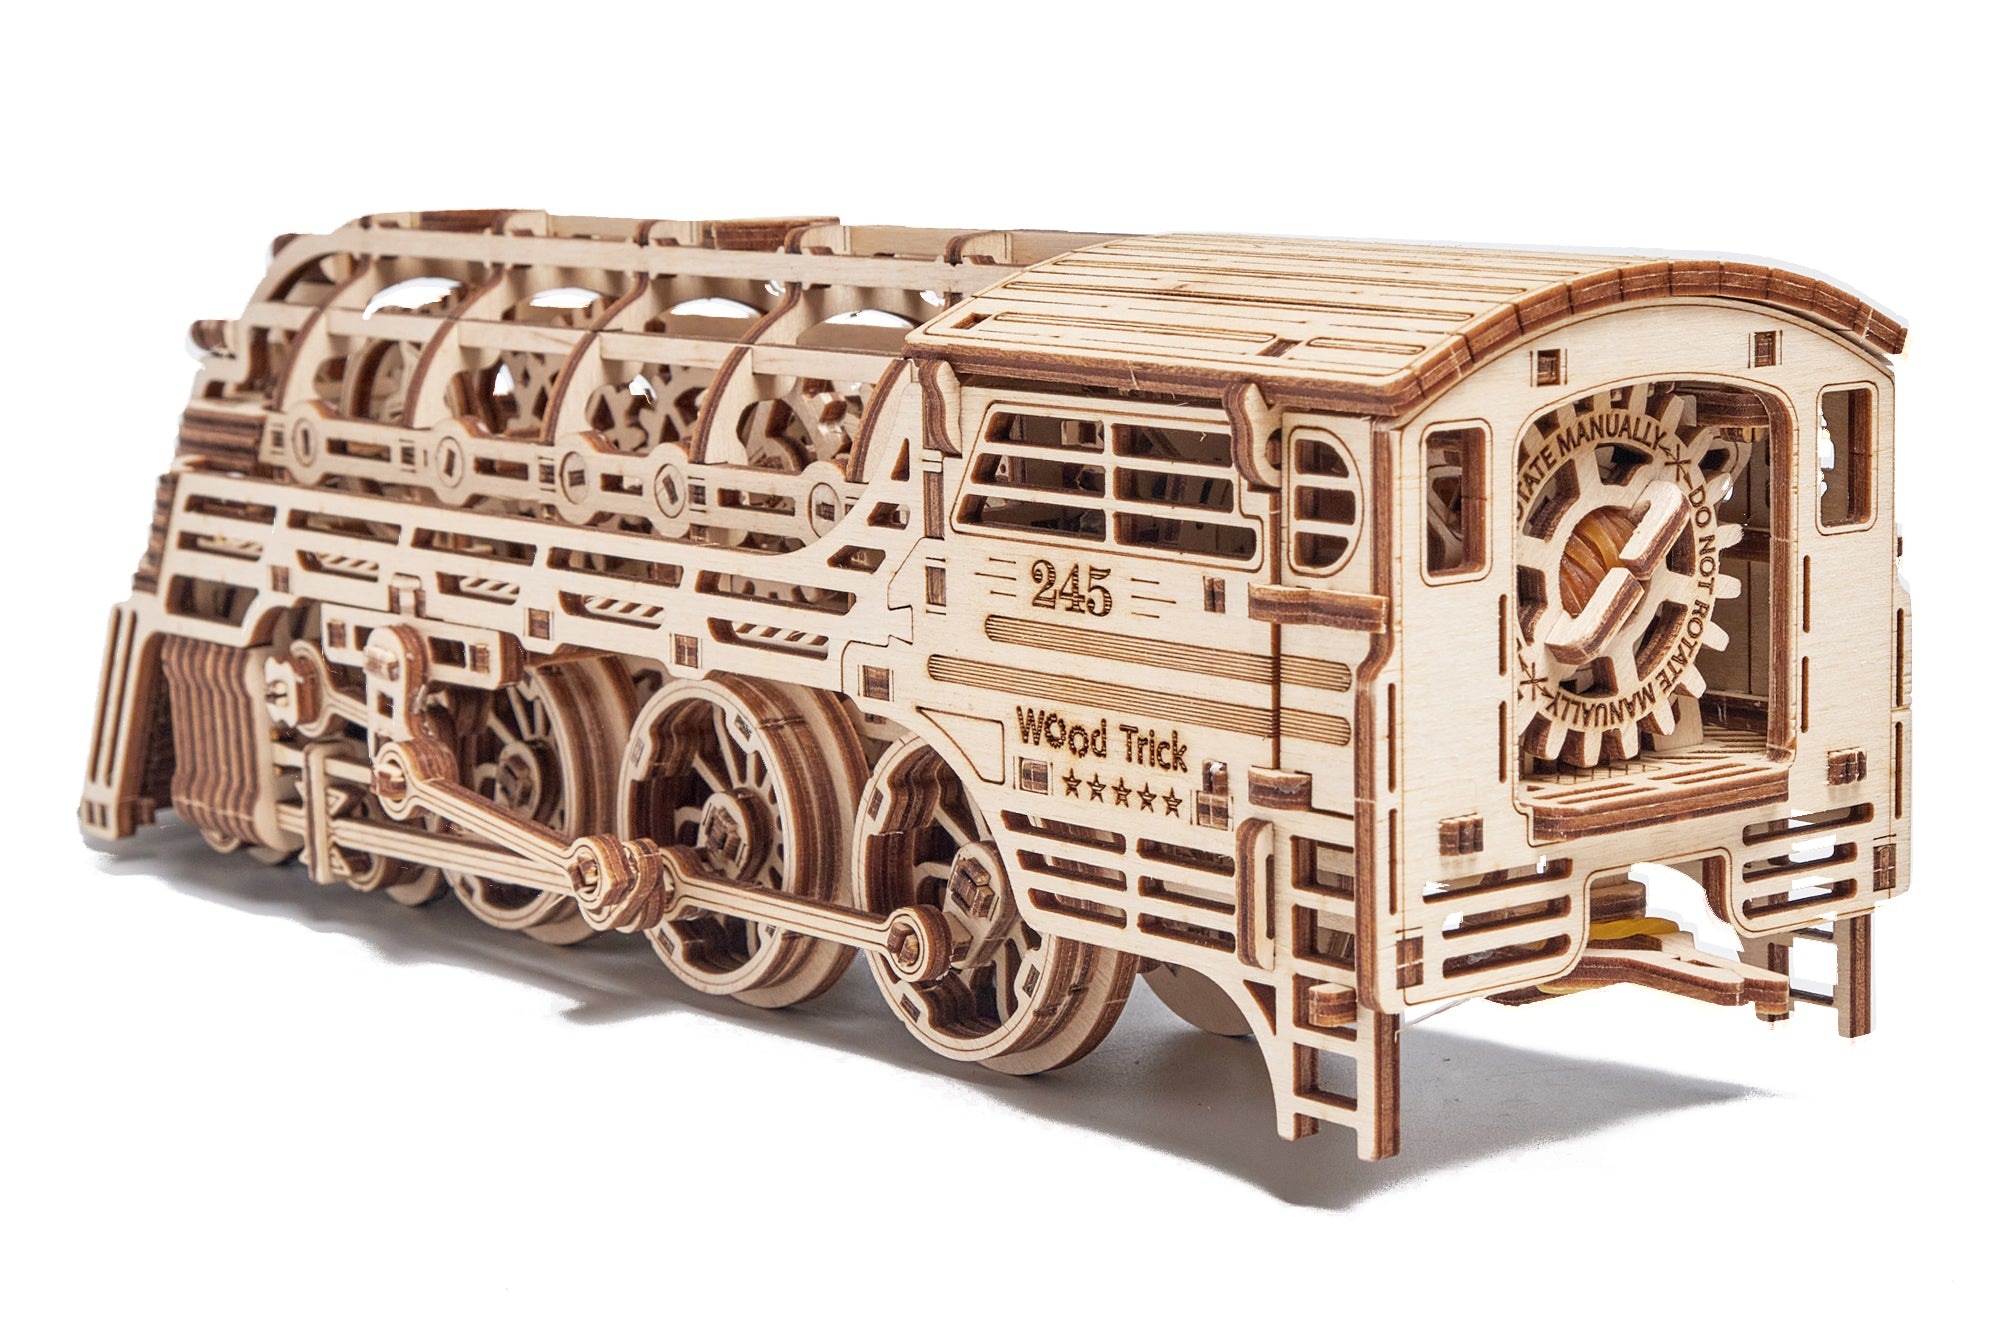 Wood Trick Atlantic Express 3D Set